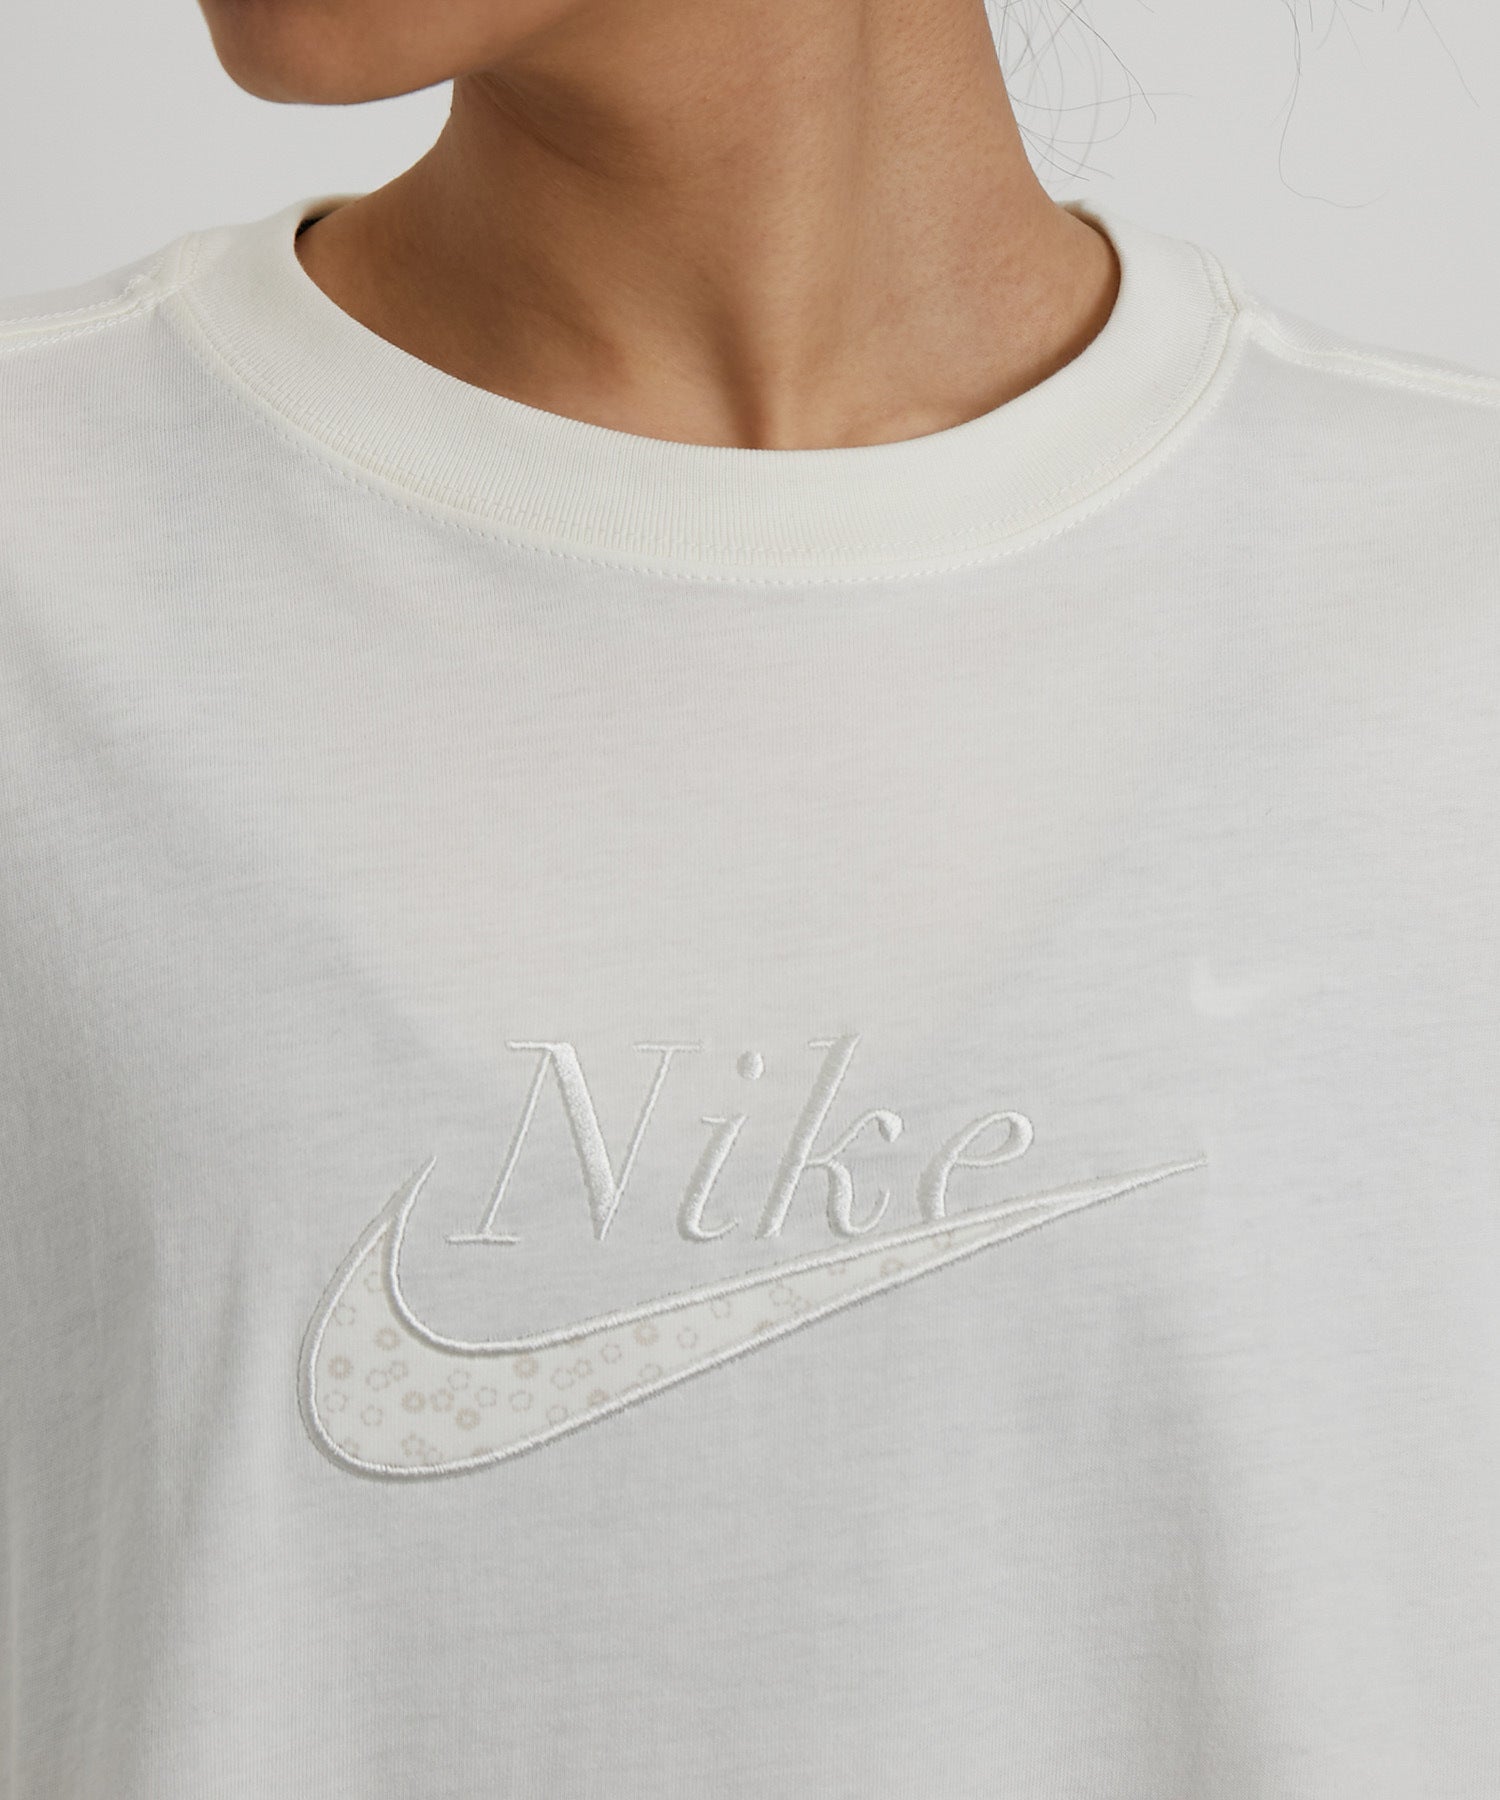 Nergy Nike ナイキ スポーツウェア ロングスリーブ Tシャツ ウィメンズ トップス Tシャツ カットソー 通販 J Adore Jun Online